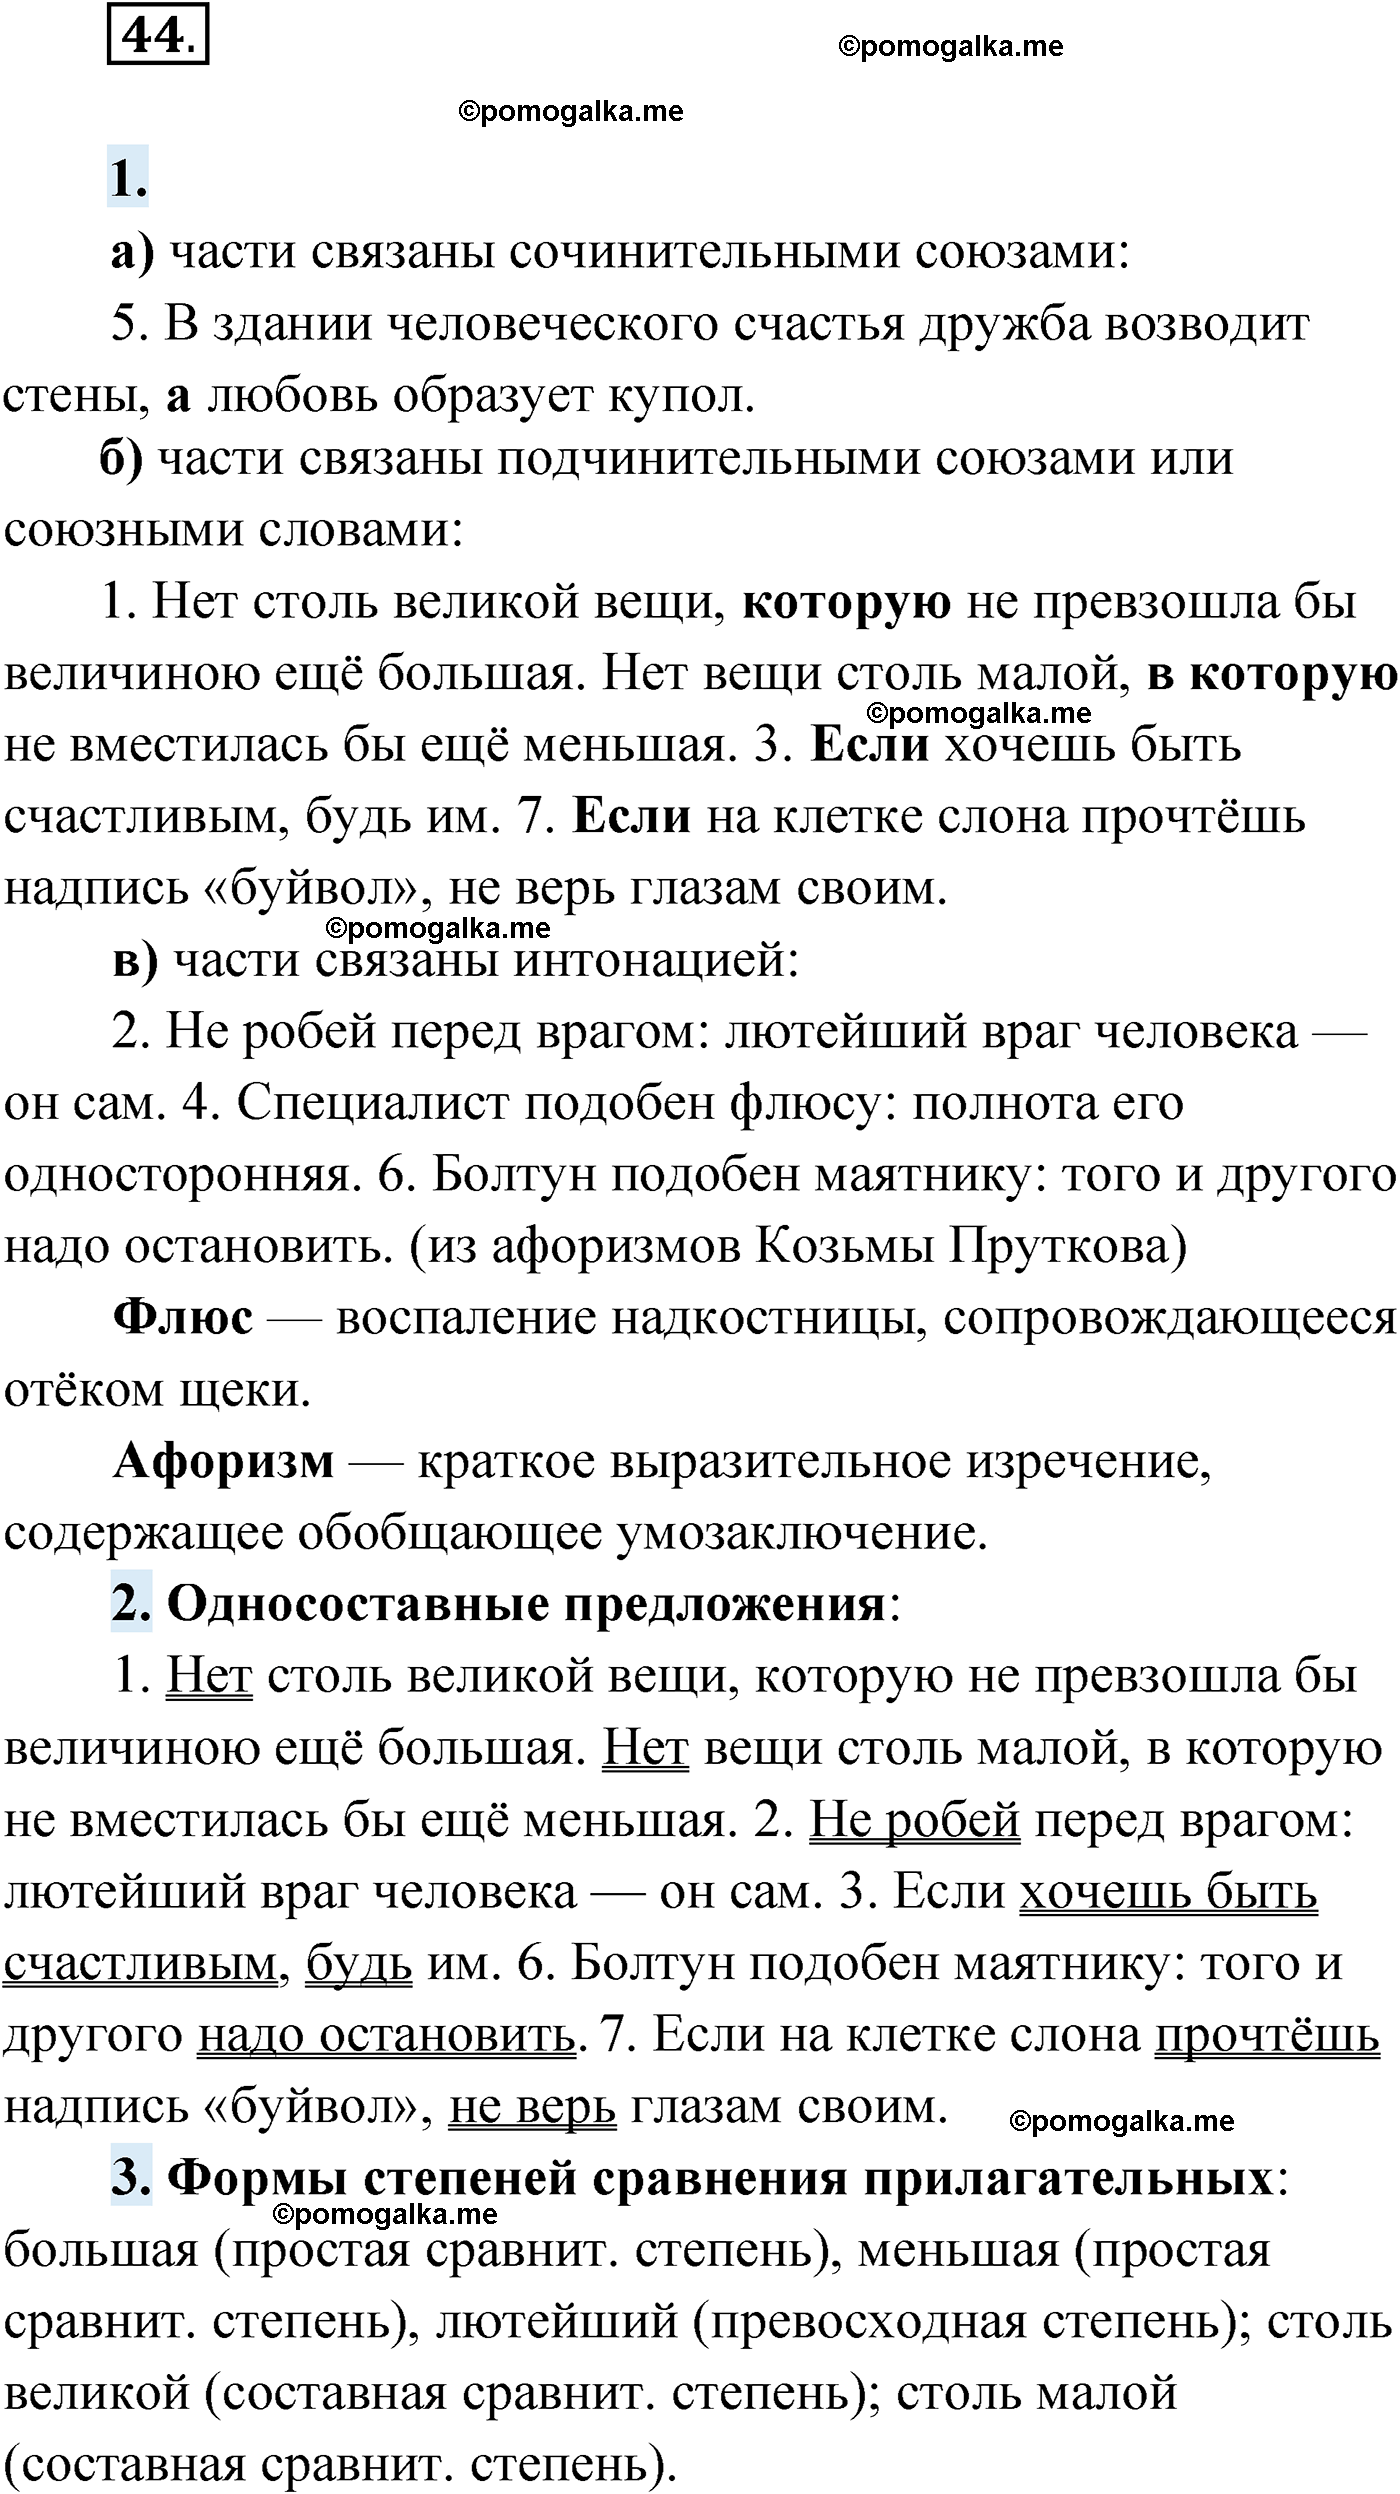 упражнение №44 русский язык 9 класс Мурина 2019 год